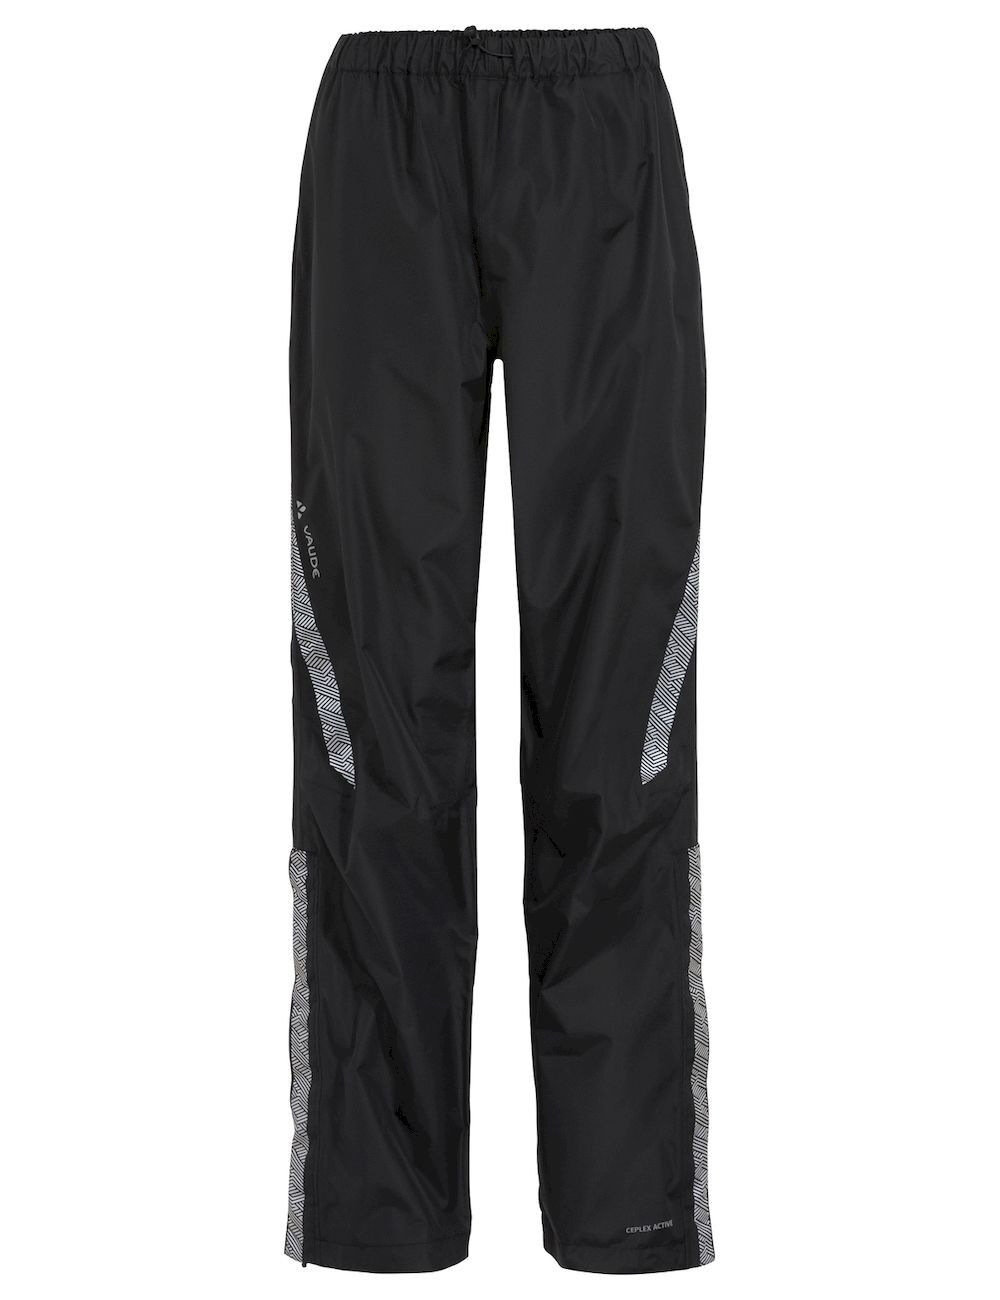 Vaude Luminum Pants II - Waterproof cycling trousers - Women's